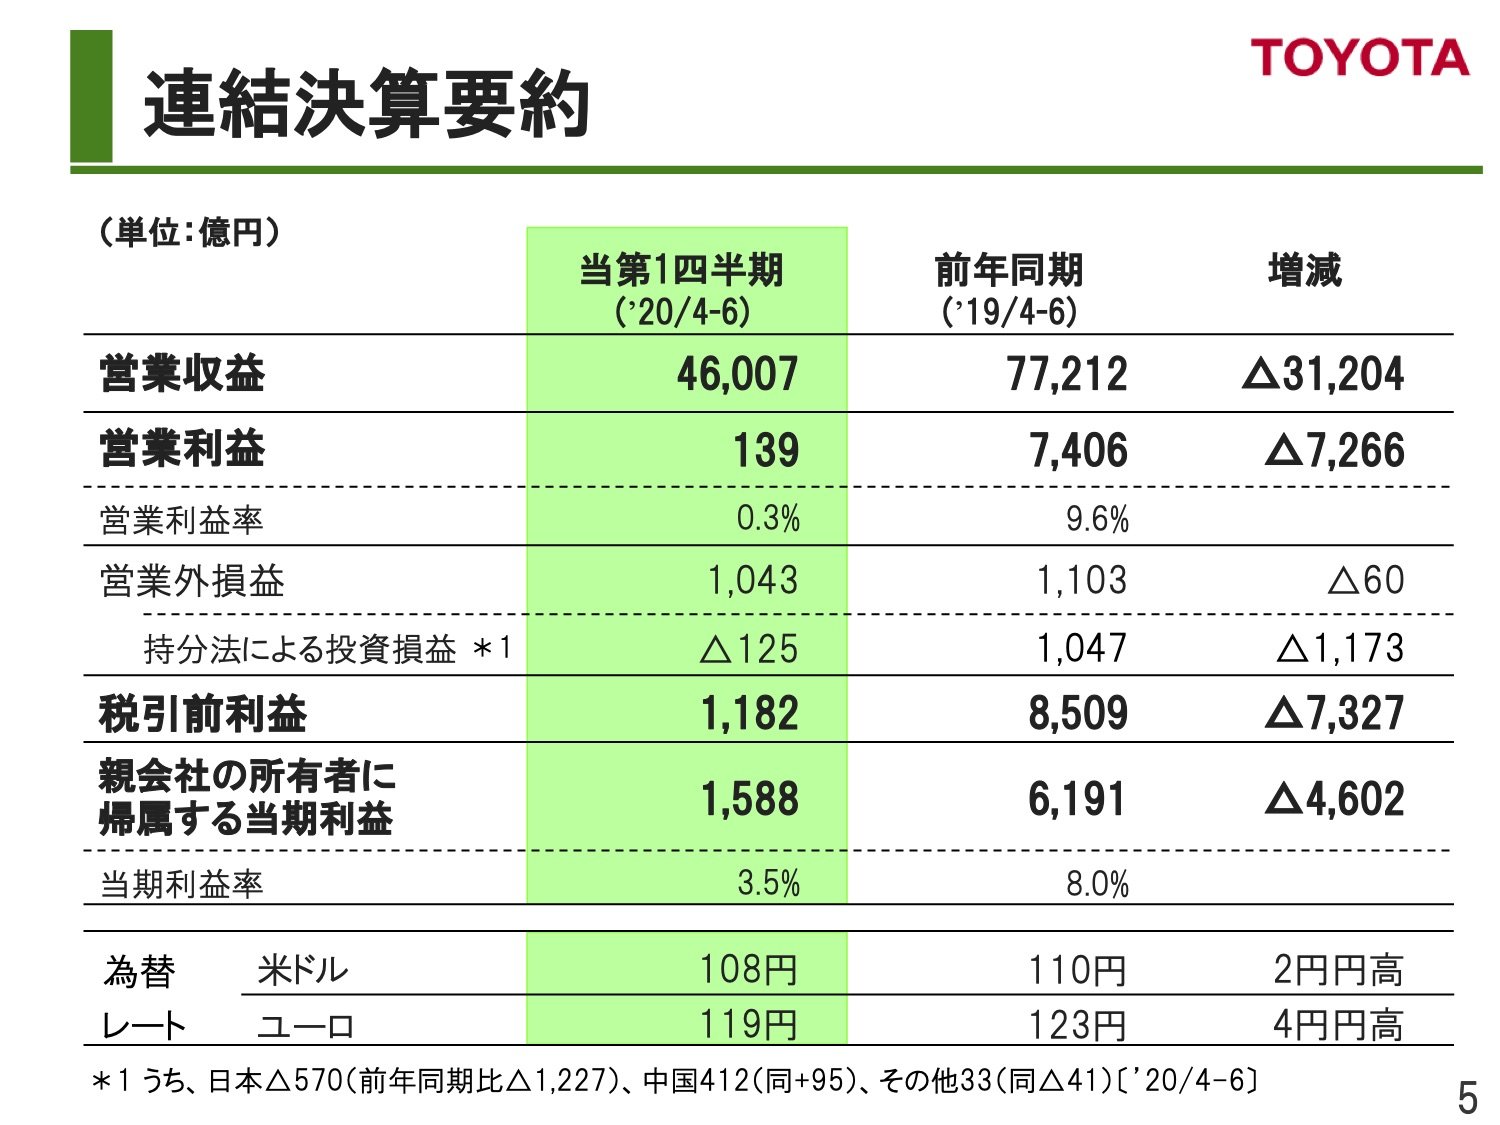 トヨタは通期販売見通しを20万台上乗せ、グローバル販売は前期比19.6％減：製造マネジメントニュース - MONOist